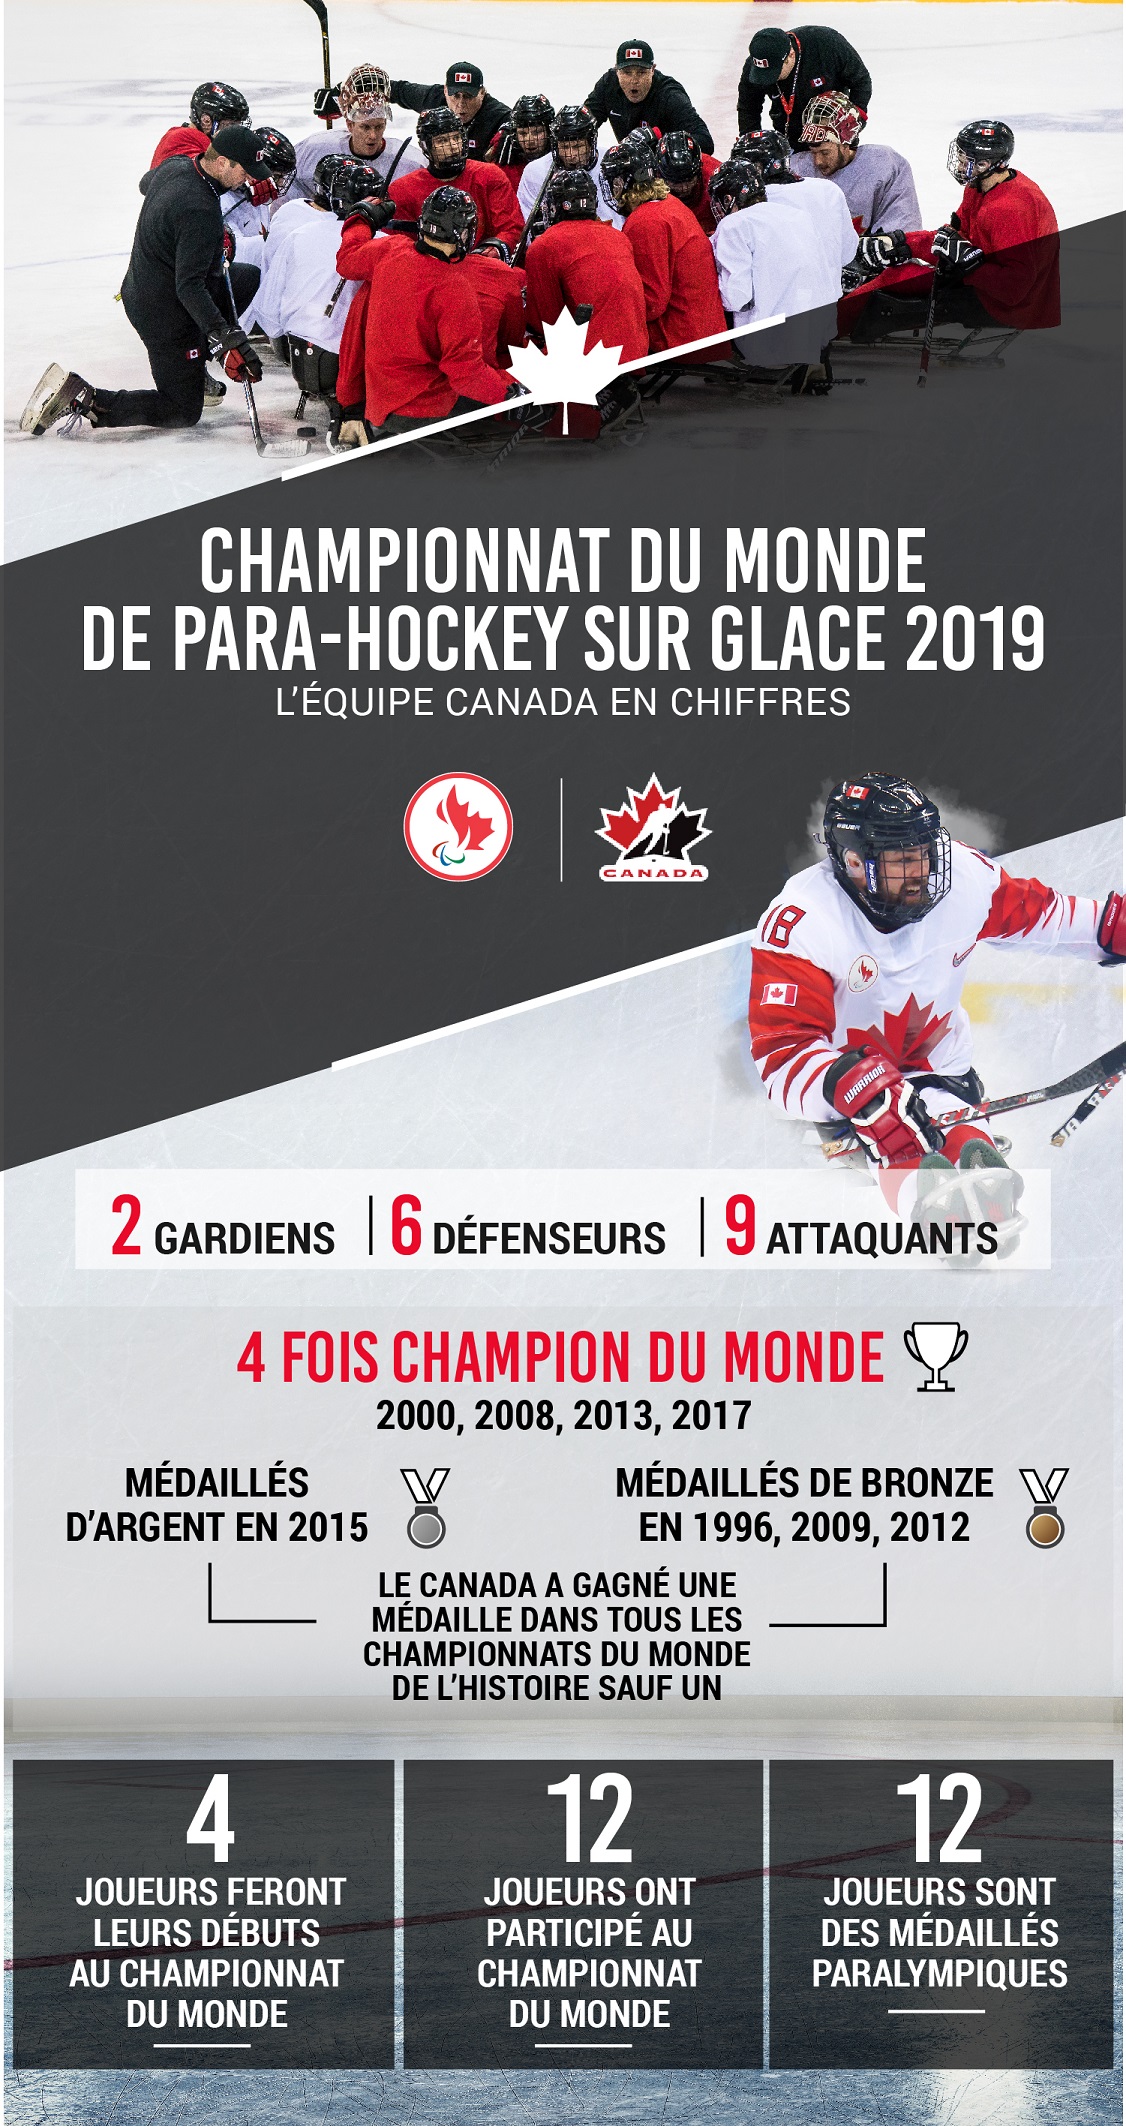 L'équipe Canada en chiffres au Championnat du monde de para-hockey sure glace 2019